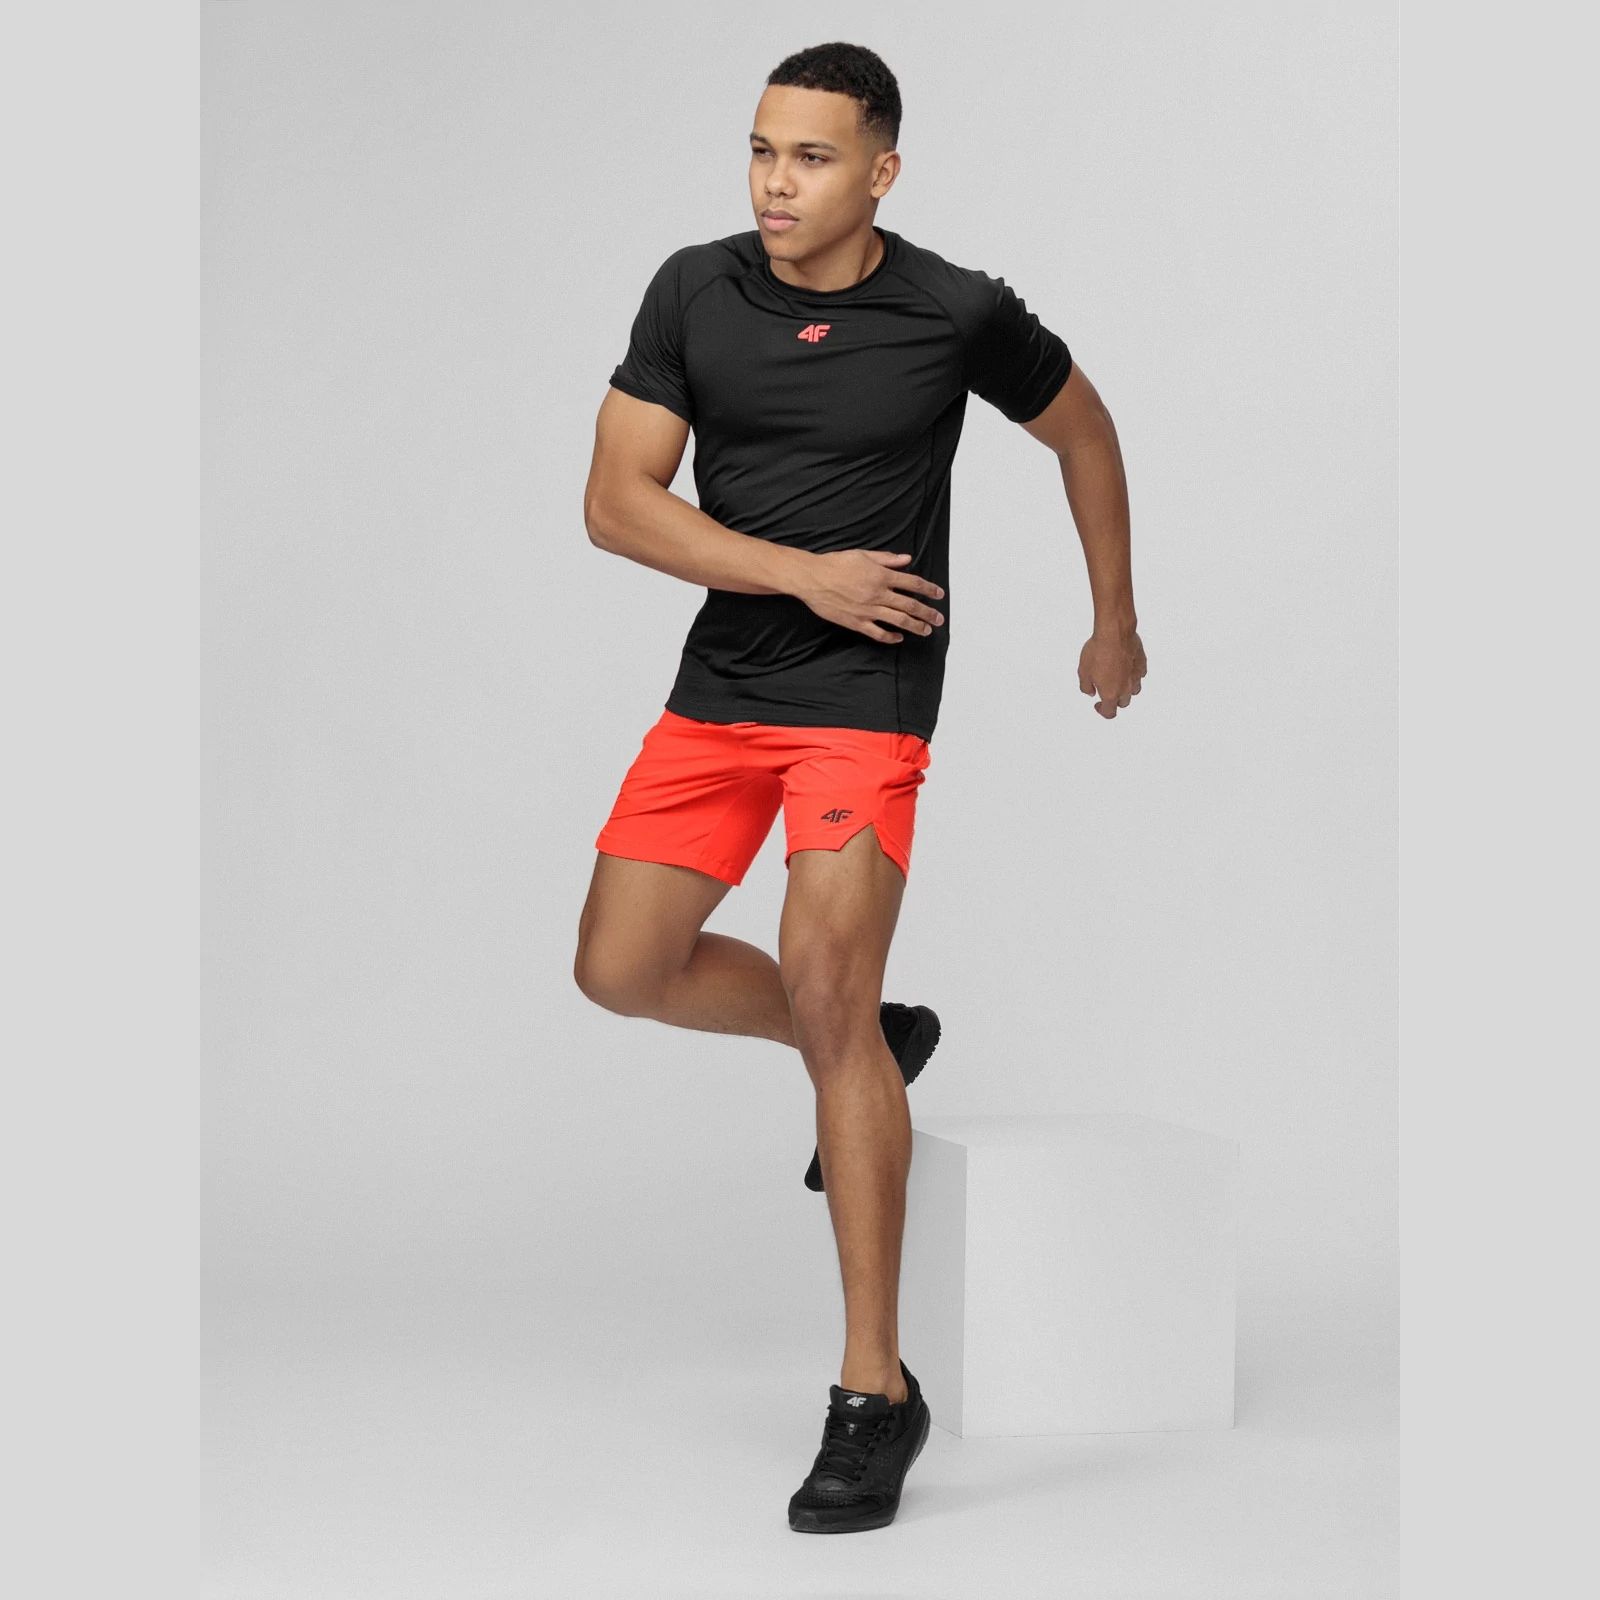 Shorts -  4f Pantaloni scurți funcționali pentru bărbați SKMF014